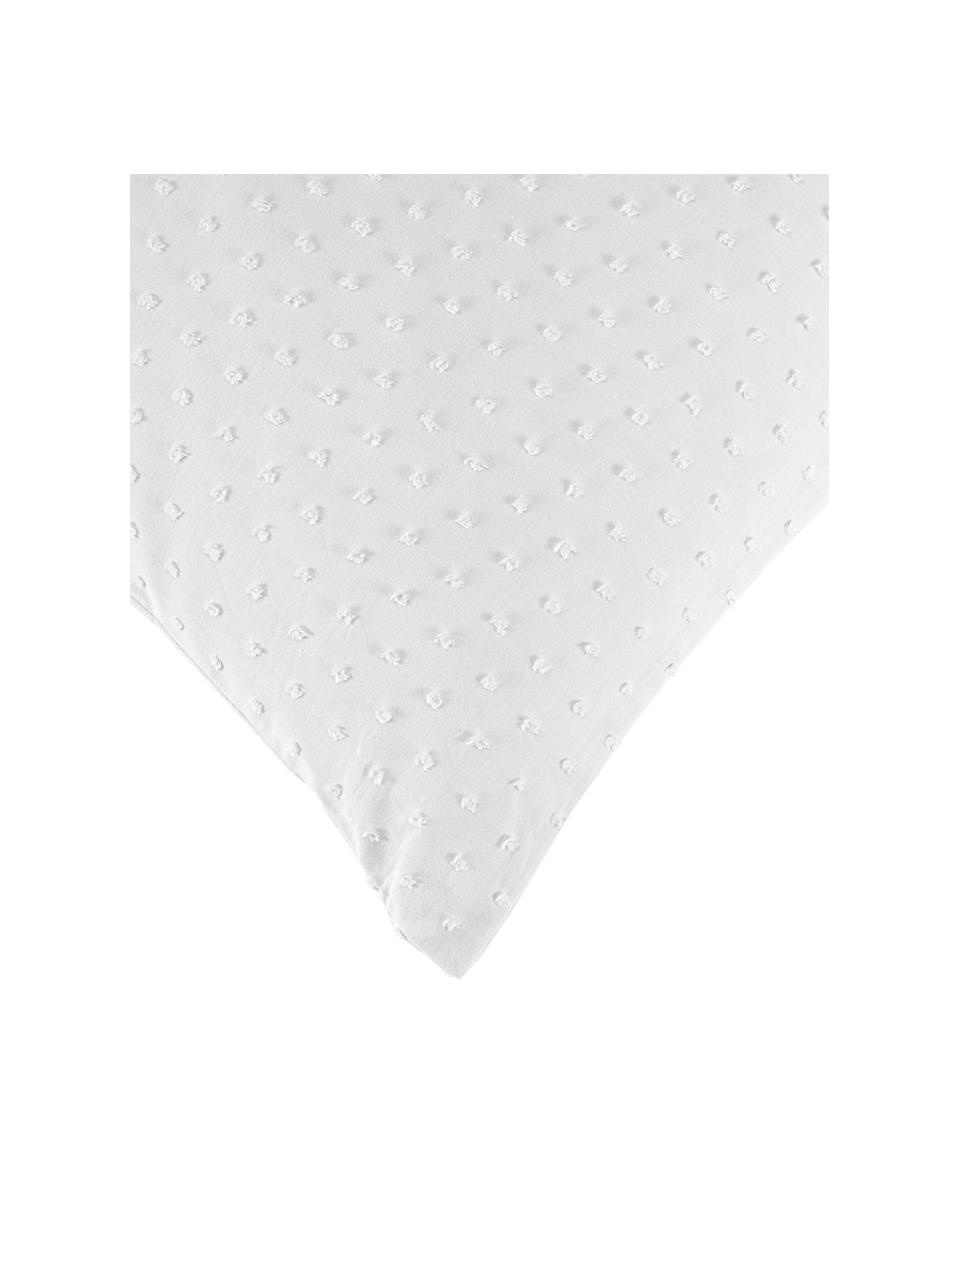 Plumetti kussenhoezen Aloide in wit, 2 stuks, Weeftechniek: plumetti Draadtelling 160, Wit, B 60 x L 70 cm